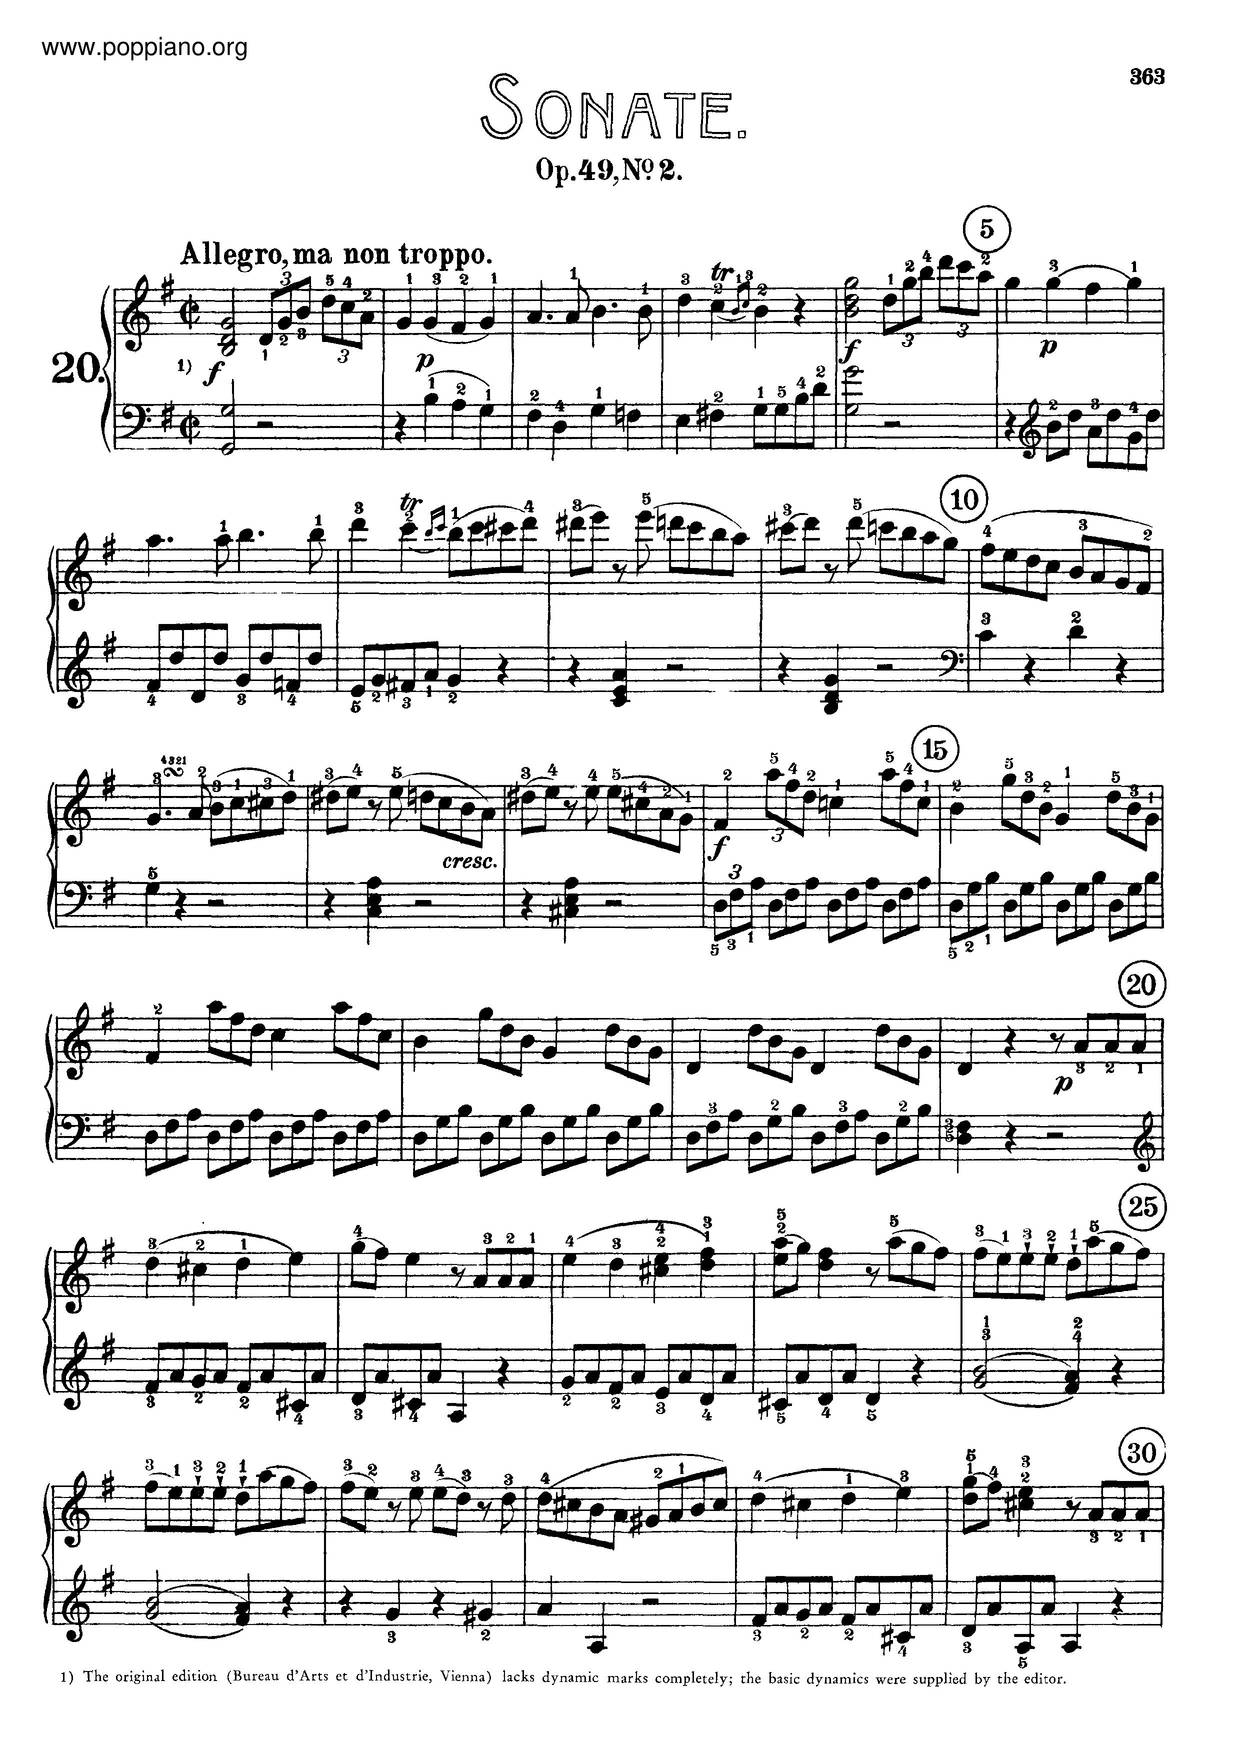 Piano Sonata No. 20 In G Major, Op. 49 No. 2 Score